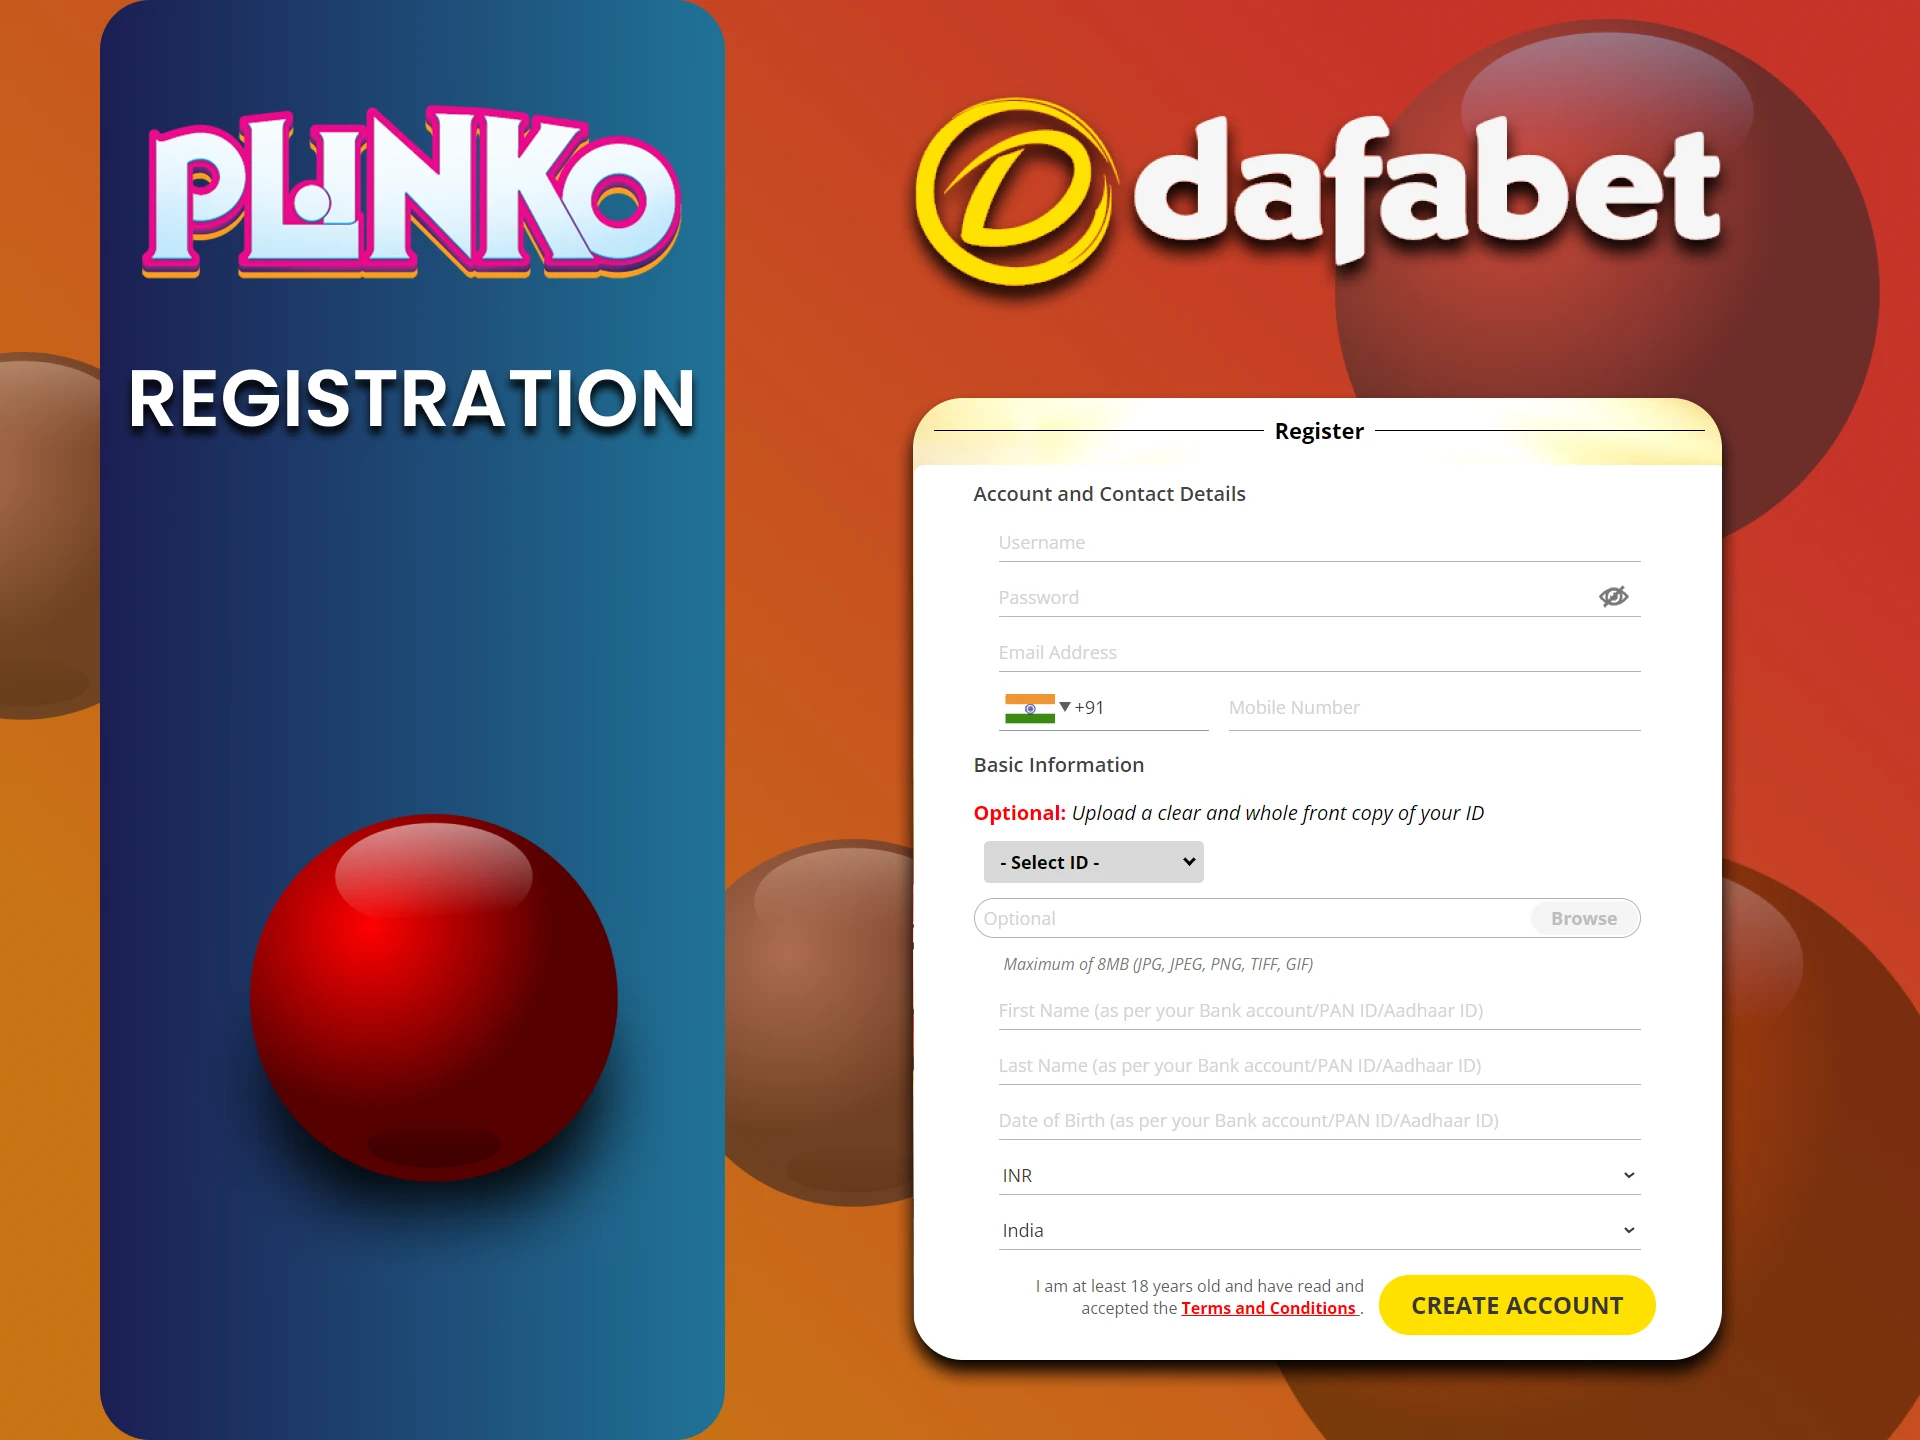 Register on Dafabet to play Plinko.